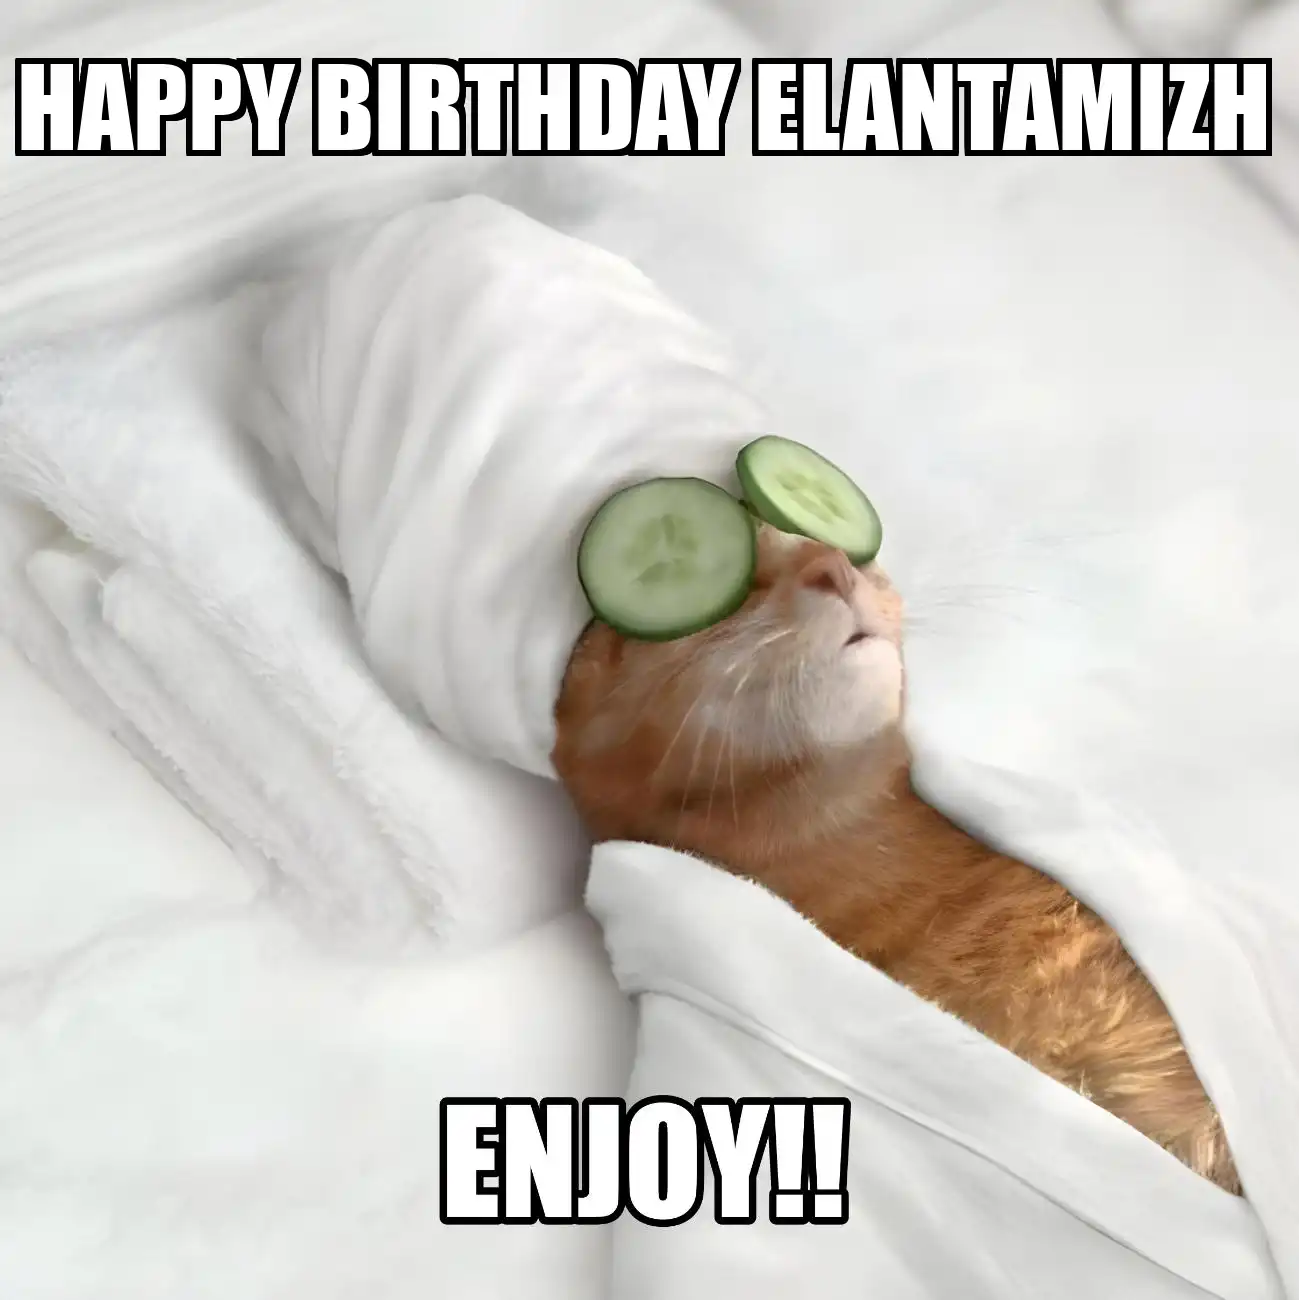 Happy Birthday Elantamizh Enjoy Cat Meme